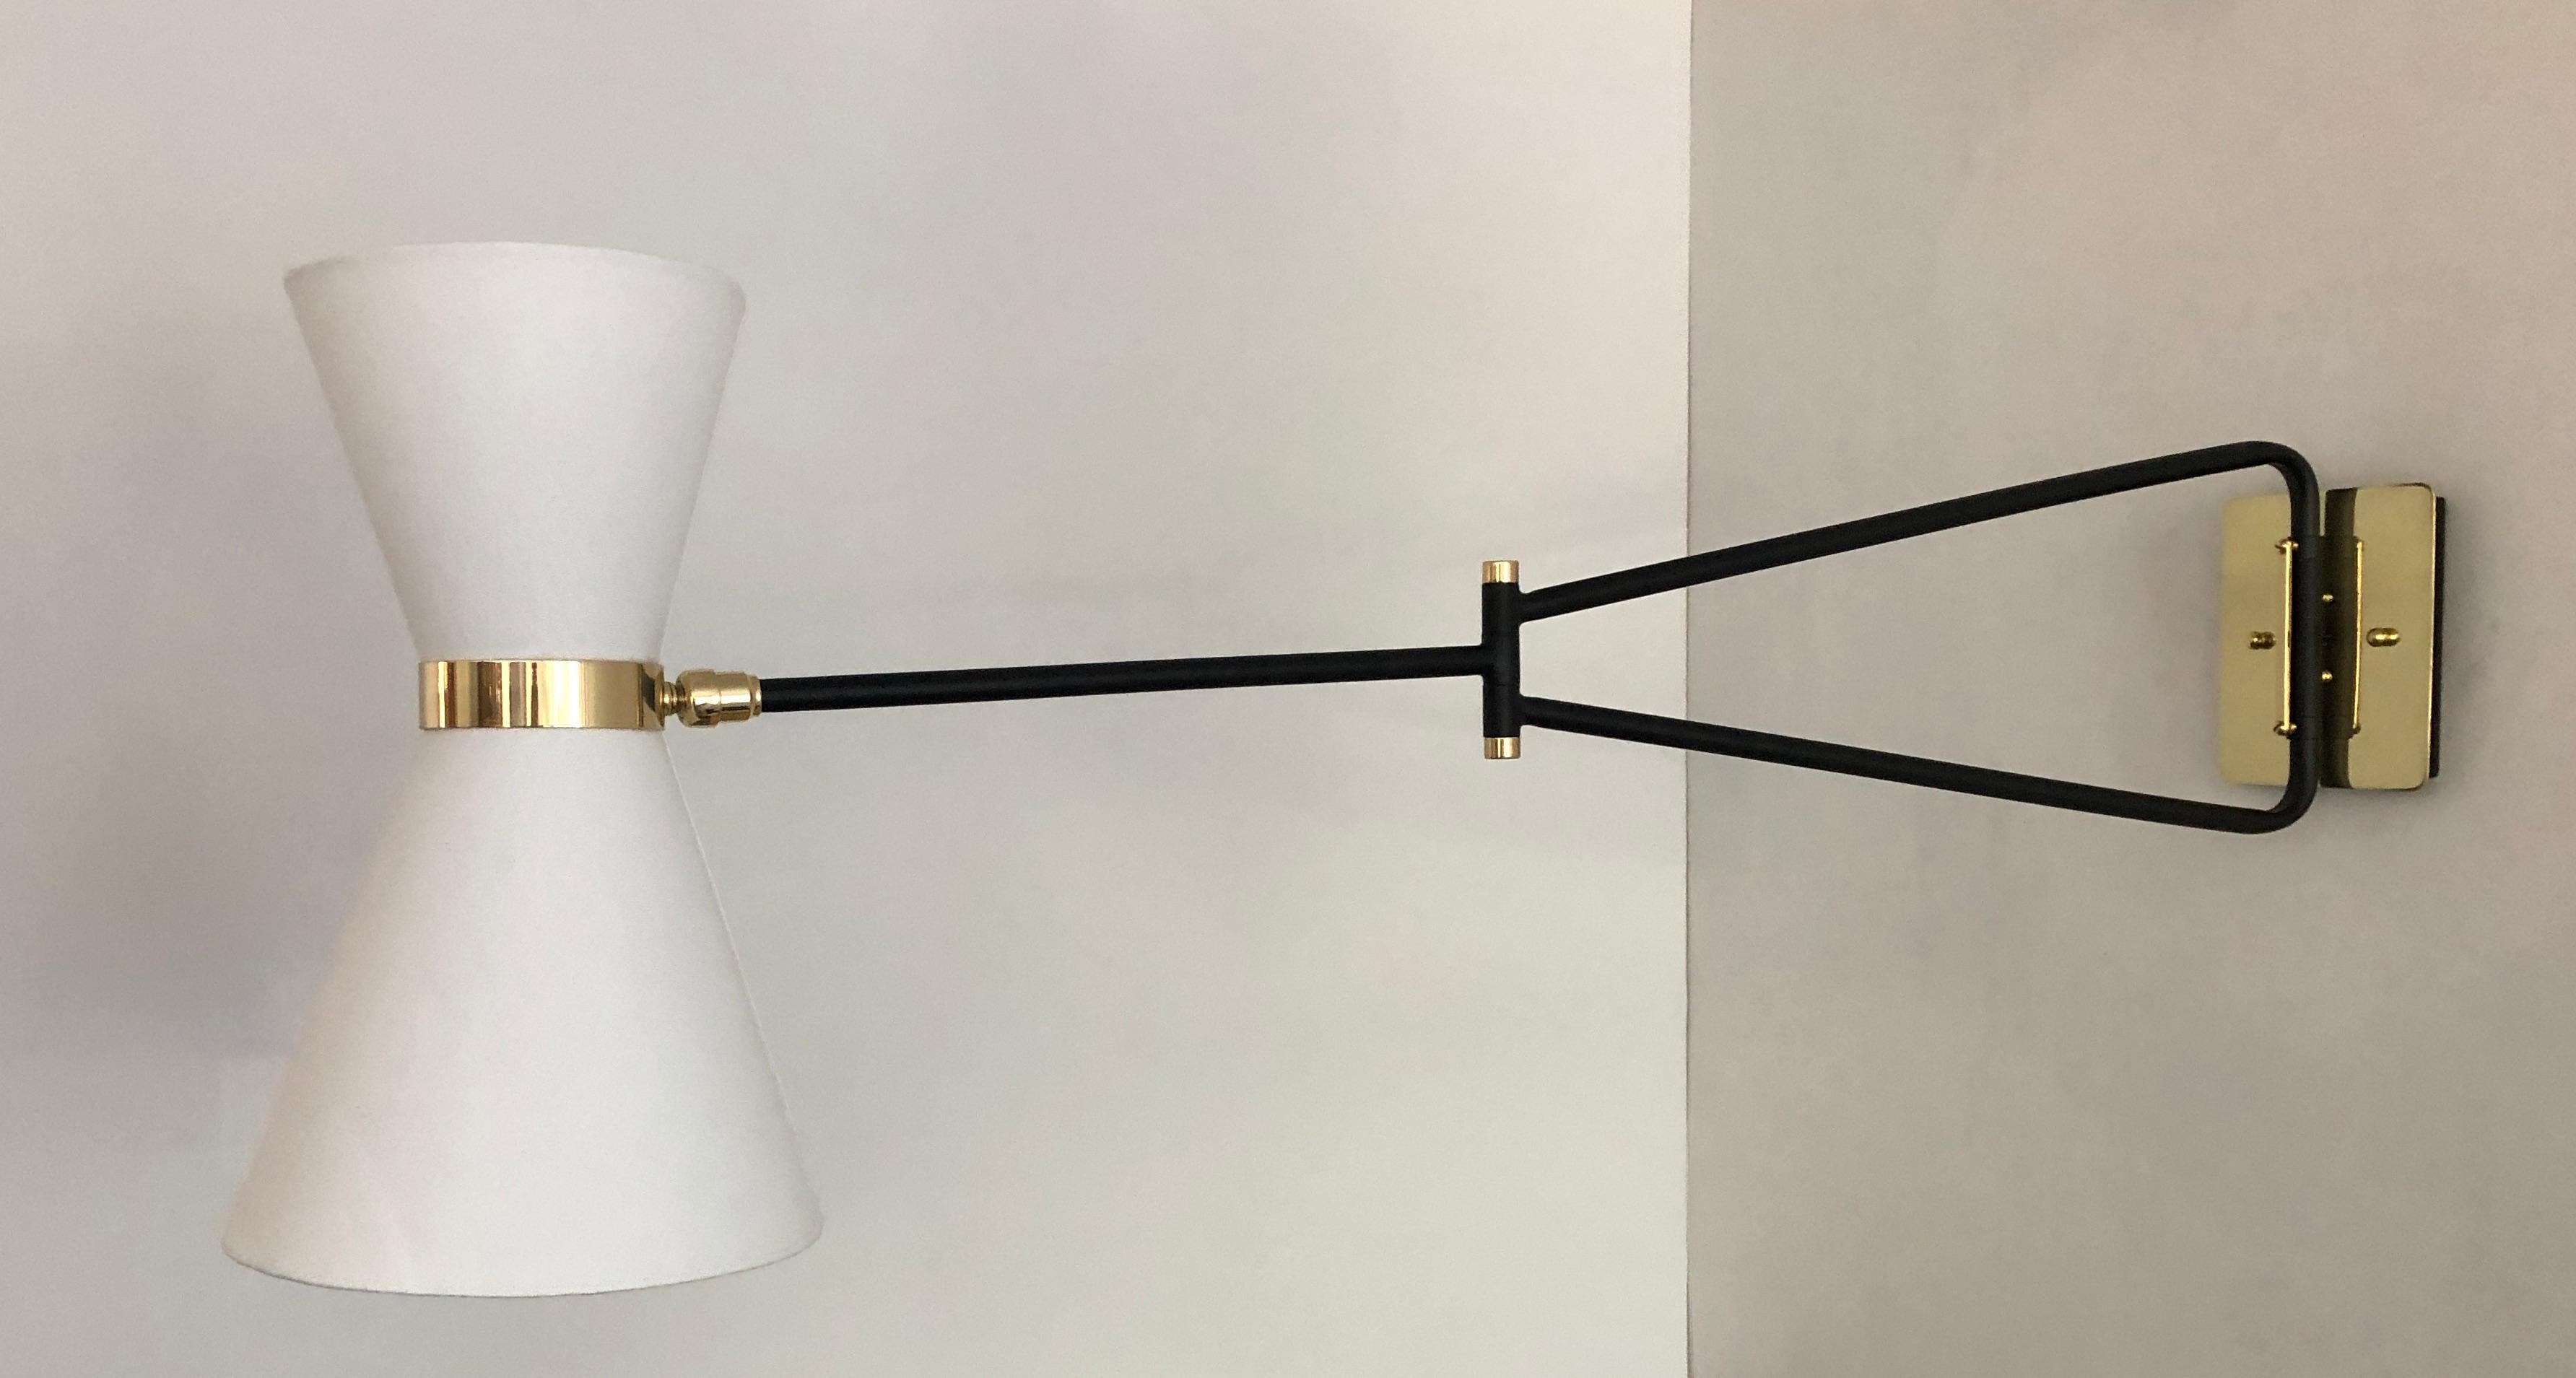 Diese elegante Leuchte ist von der französischen Midcentury-Mode der 1950er Jahre inspiriert. Die Leuchte mit ihrem doppelten Schirm und Gelenkarm ist eine vielseitige Lichtquelle. Der Kopf ist schwenkbar, um das Licht der beiden Kandelaberlampen in